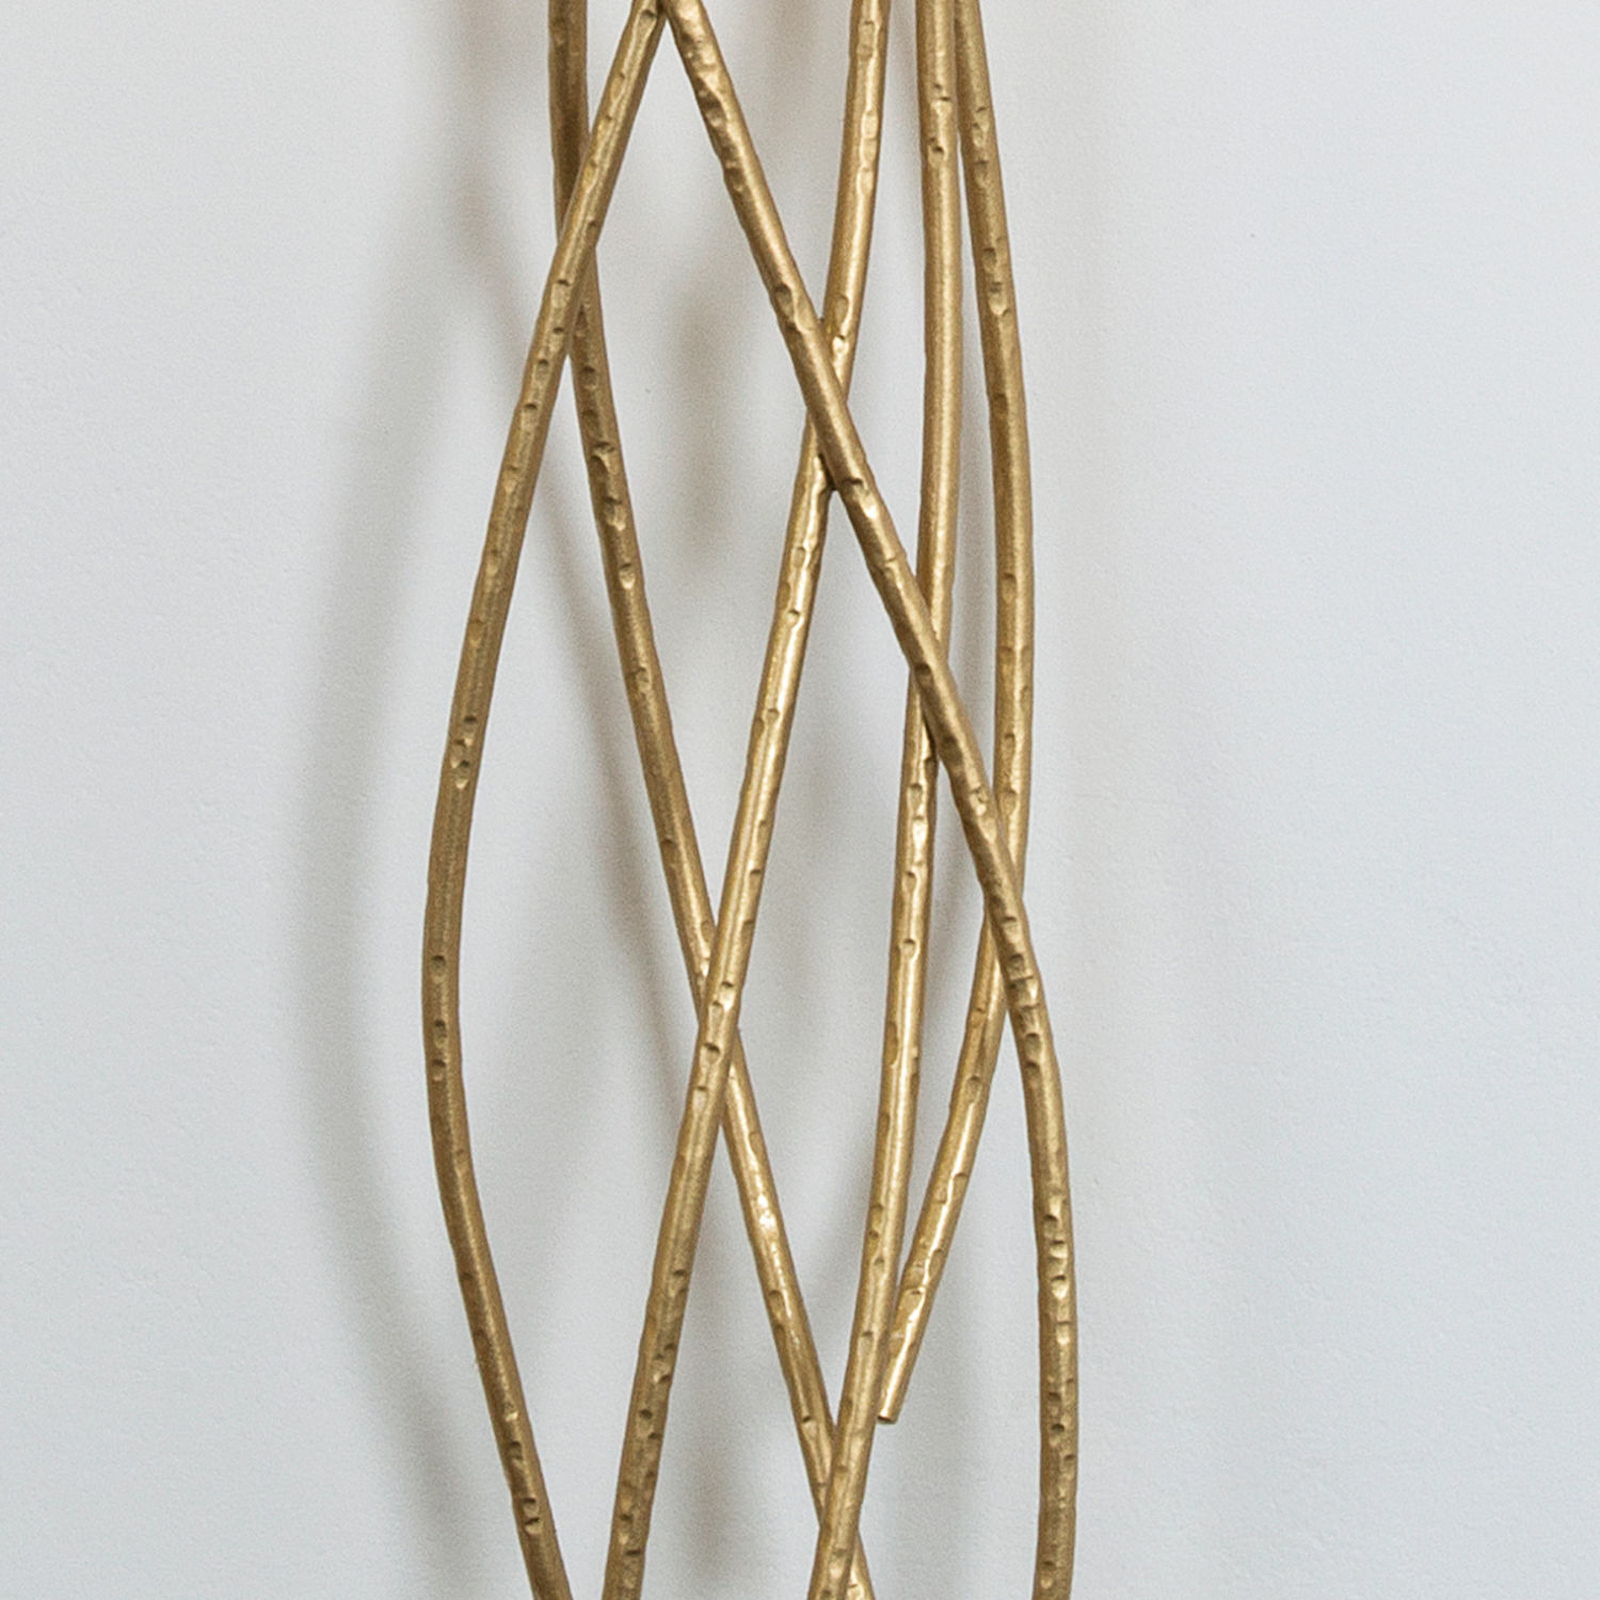 Elba lungo væglampe, guld/sort, højde 144 cm, jern